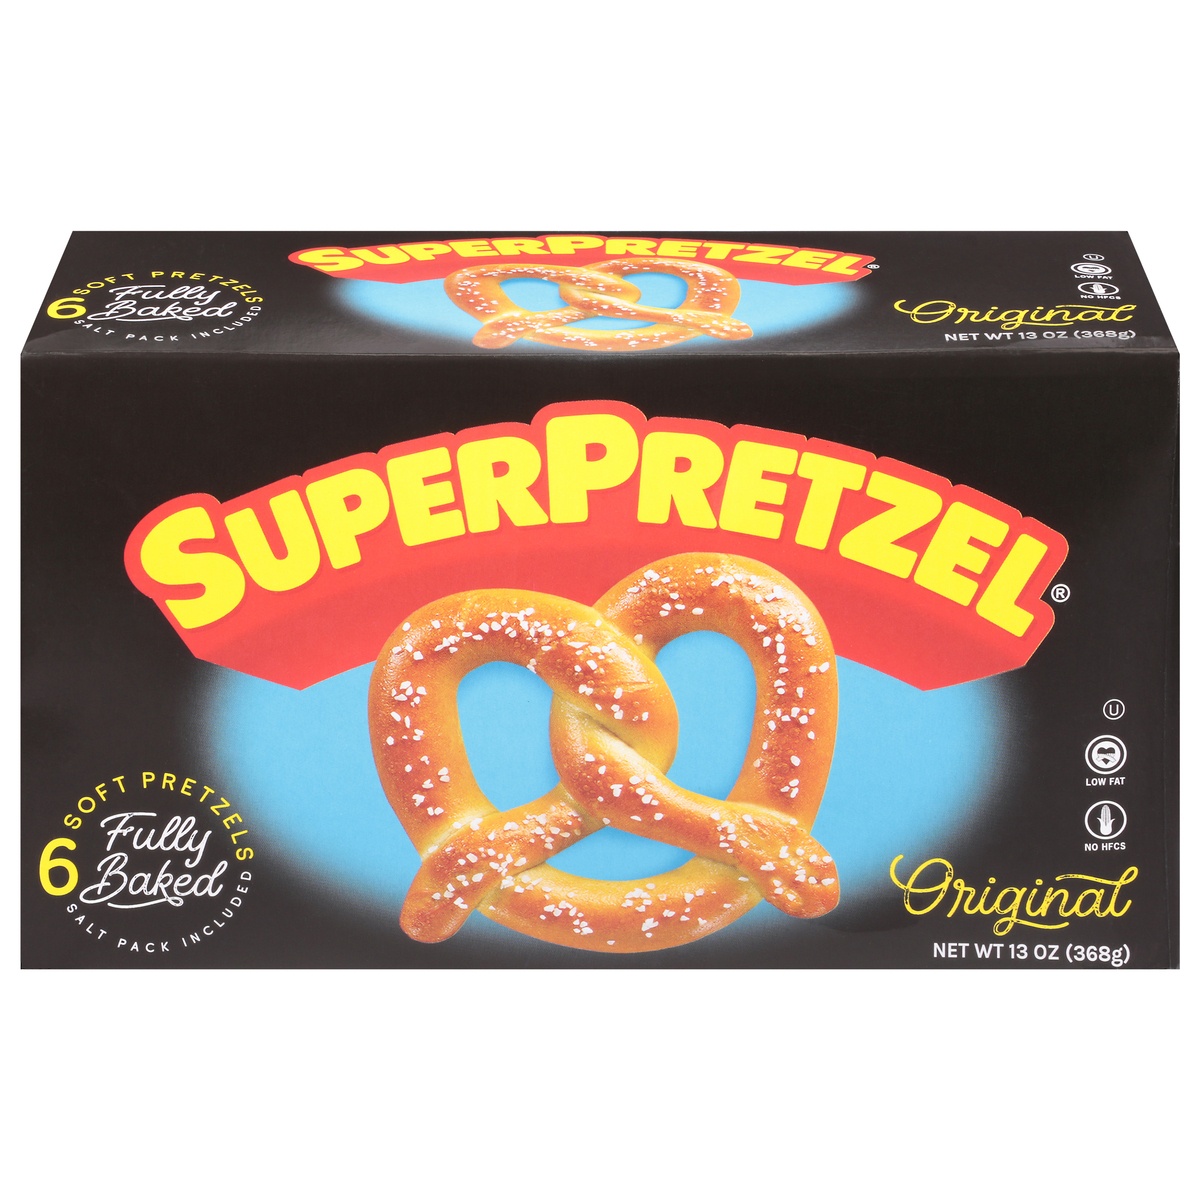 slide 1 of 8, SuperPretzel Baked Soft Pretzels, 6 ct